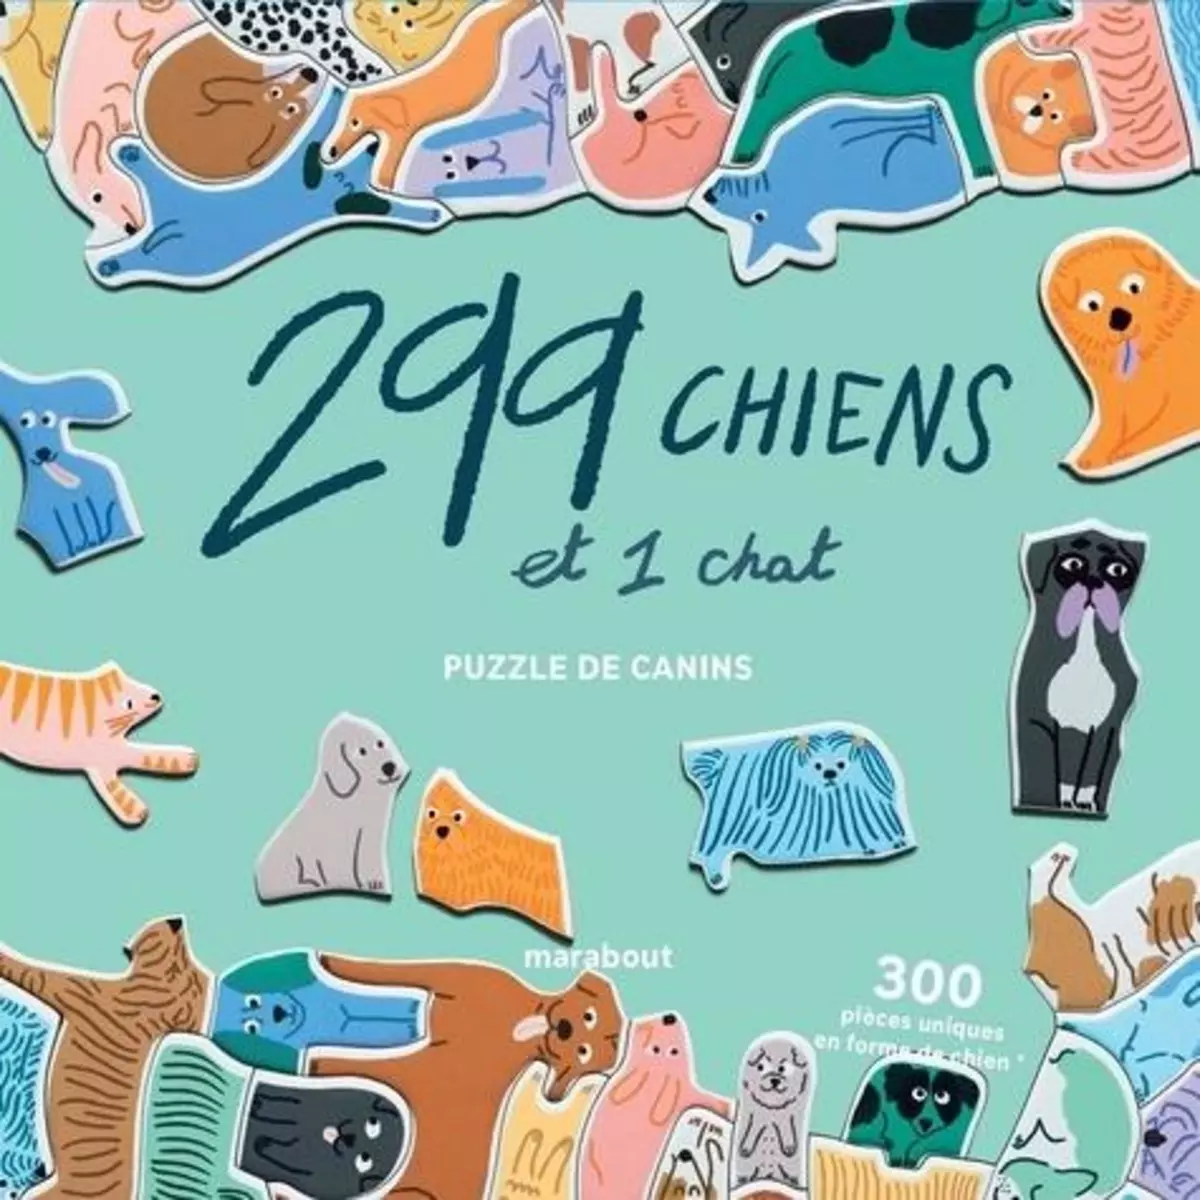  299 CHIENS ET 1 CHAT. PUZZLE DE CANINS, Maupetit Léa